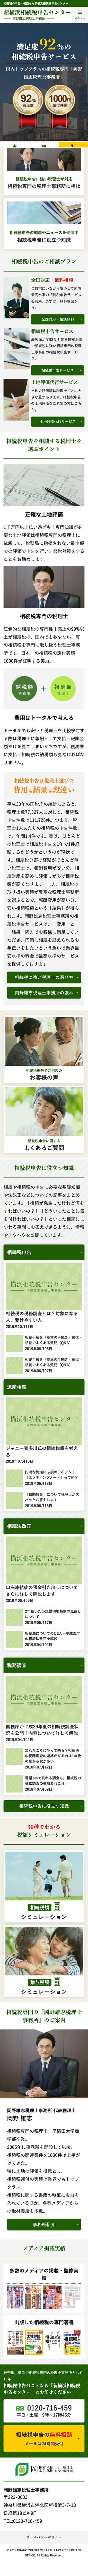 新横浜相続税申告センター|相続税申告 / サービスサイト 